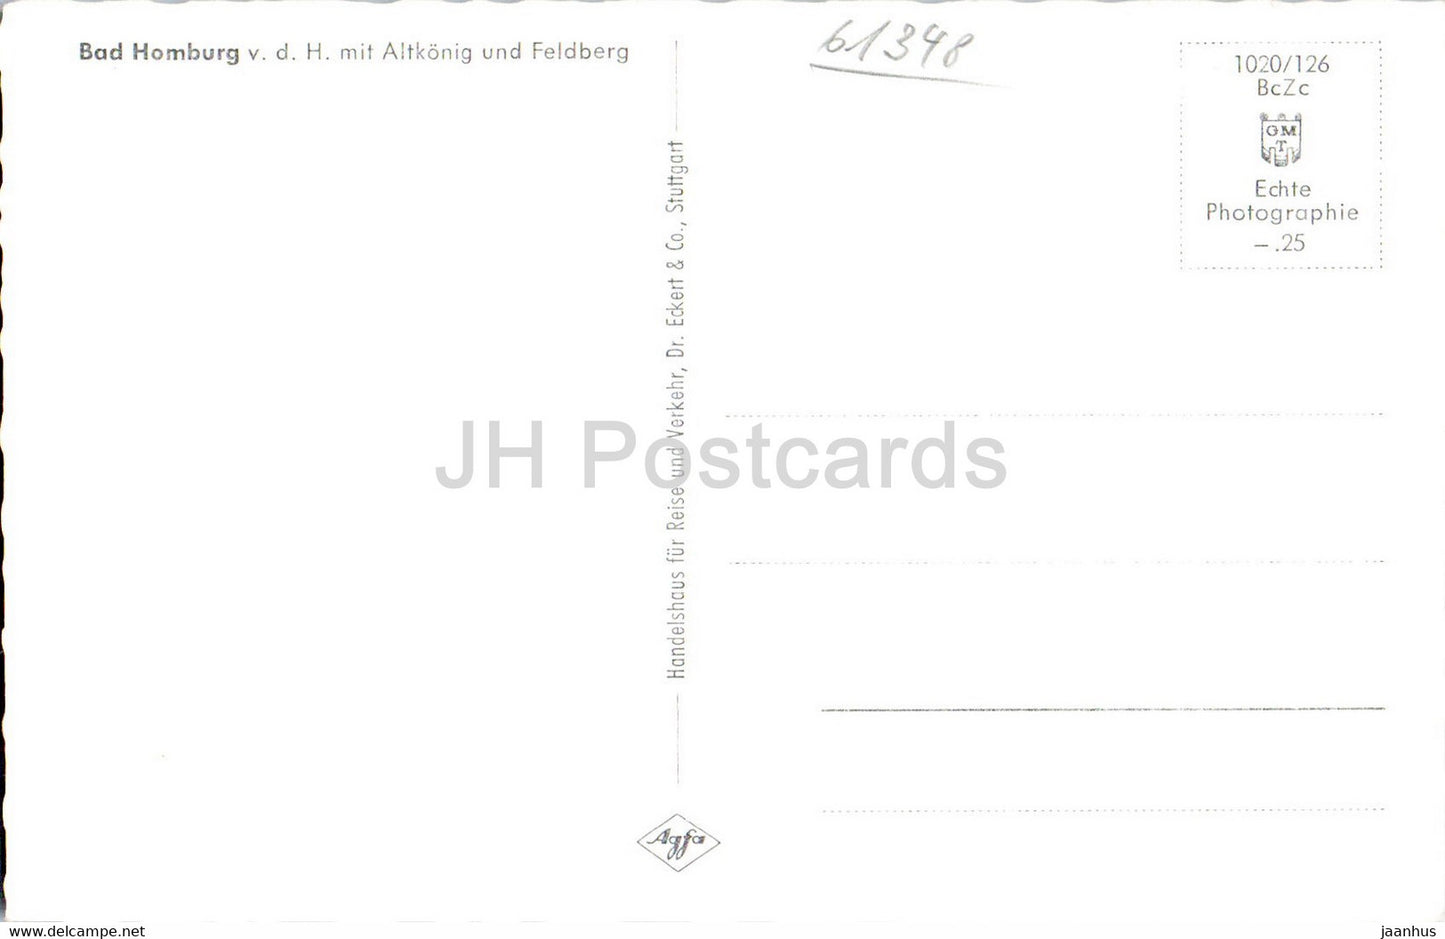 Bad Homburg mit Altkonig und Feldberg - carte postale ancienne - Allemagne - inutilisée